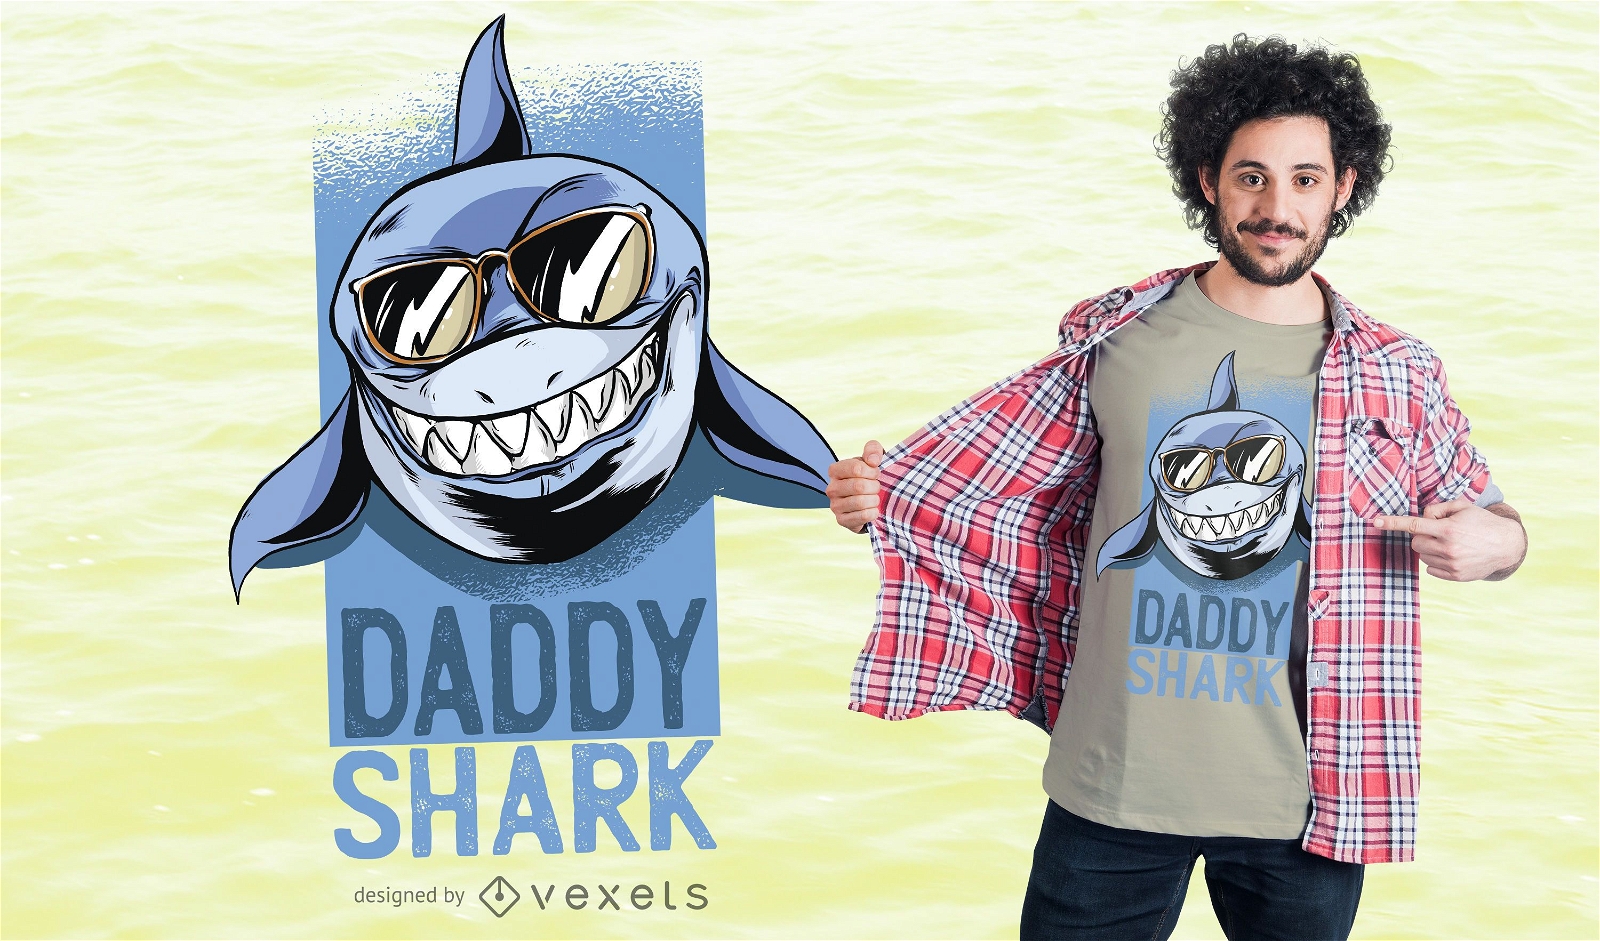 Dise?o de camiseta Daddy Shark